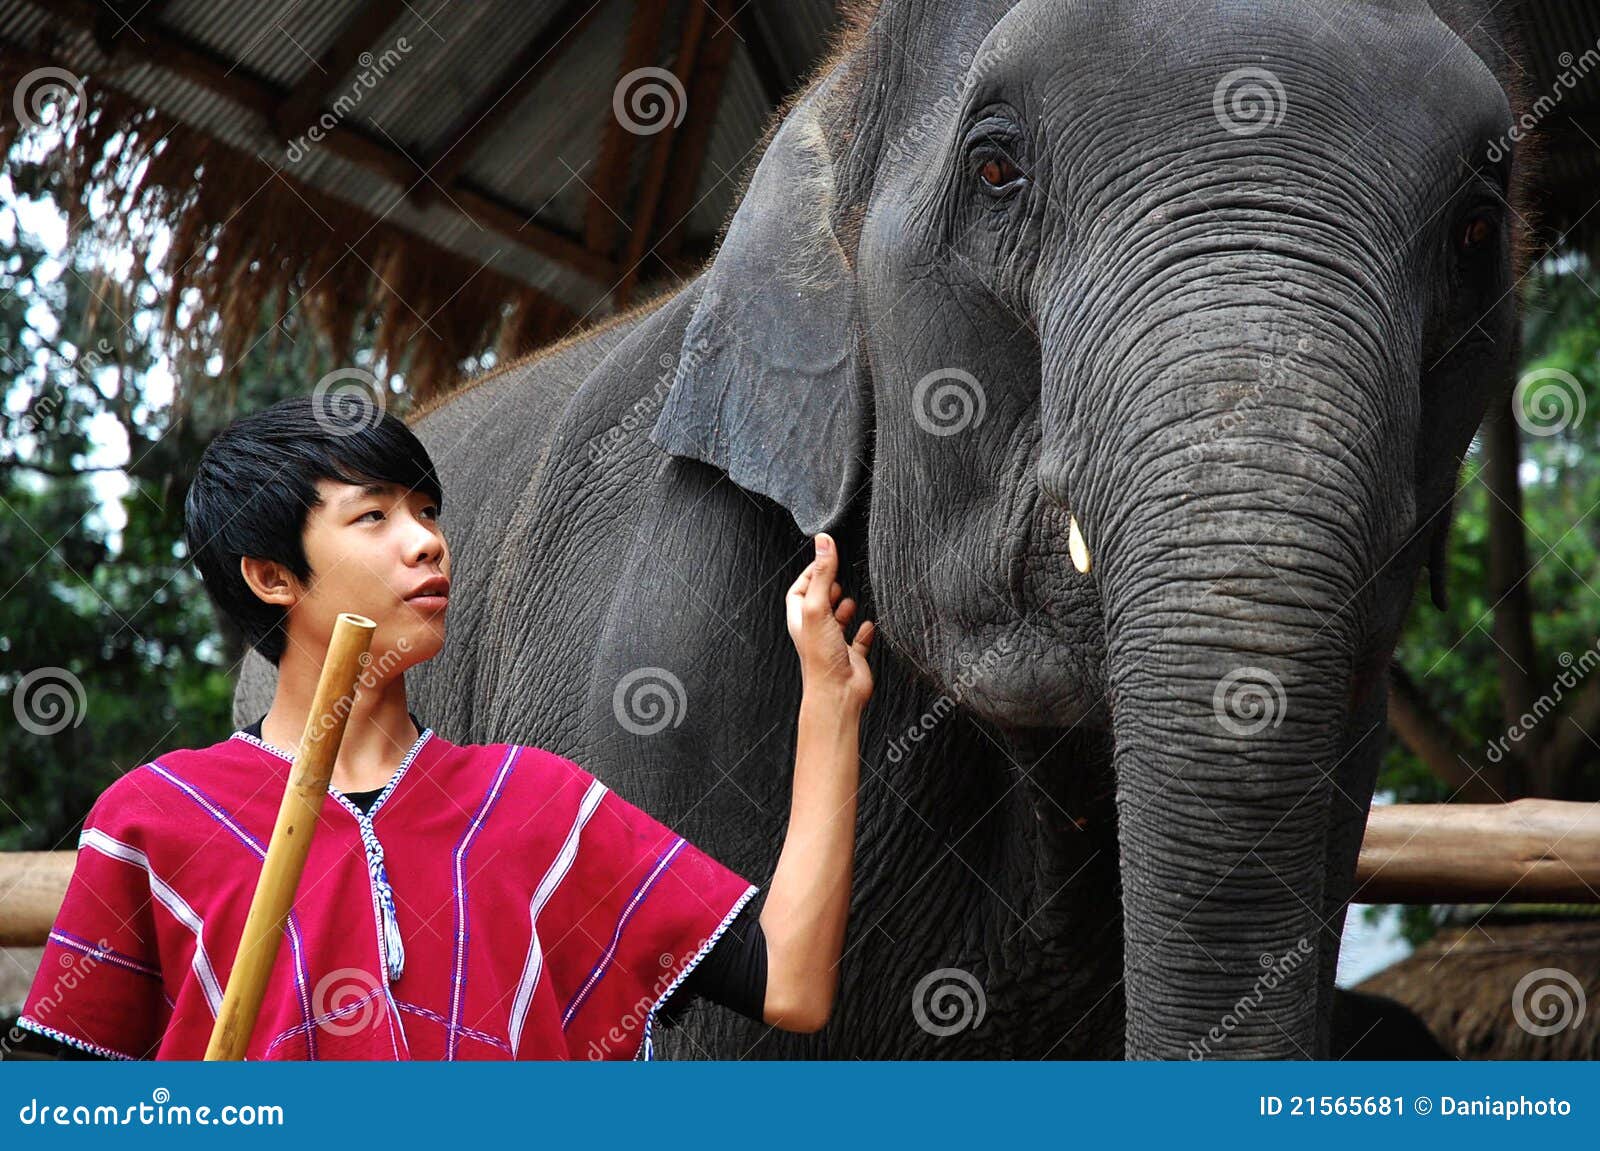 слон его детеныши mahout. слоны 2008 слона chiangmai внимательности лагеря агрегата августовские его mahout maesa дома север одно самого большого родной принимают Таиланд к детенышам